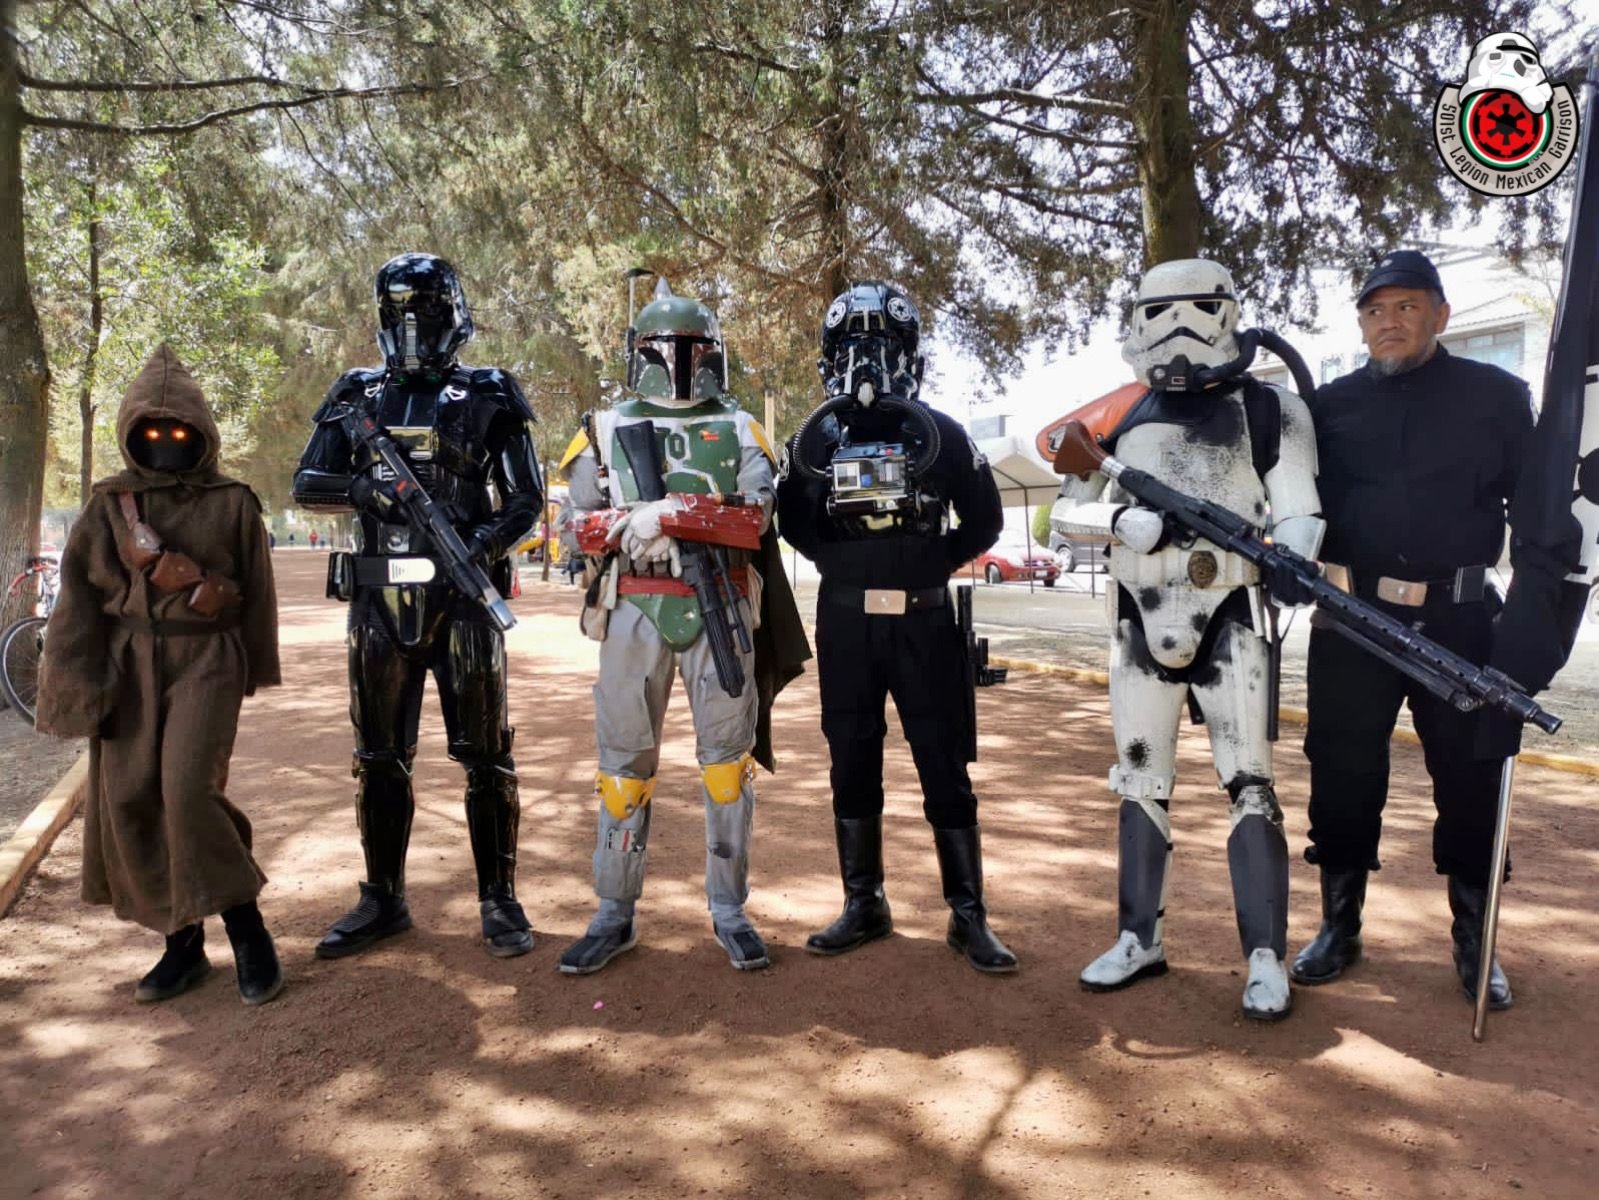 La Legión 501 de Star Wars se caracteriza por portar trajes de muy buena calidad alusivos al Imperio Galáctico. FOTO: Twitter @MexicanGarrison